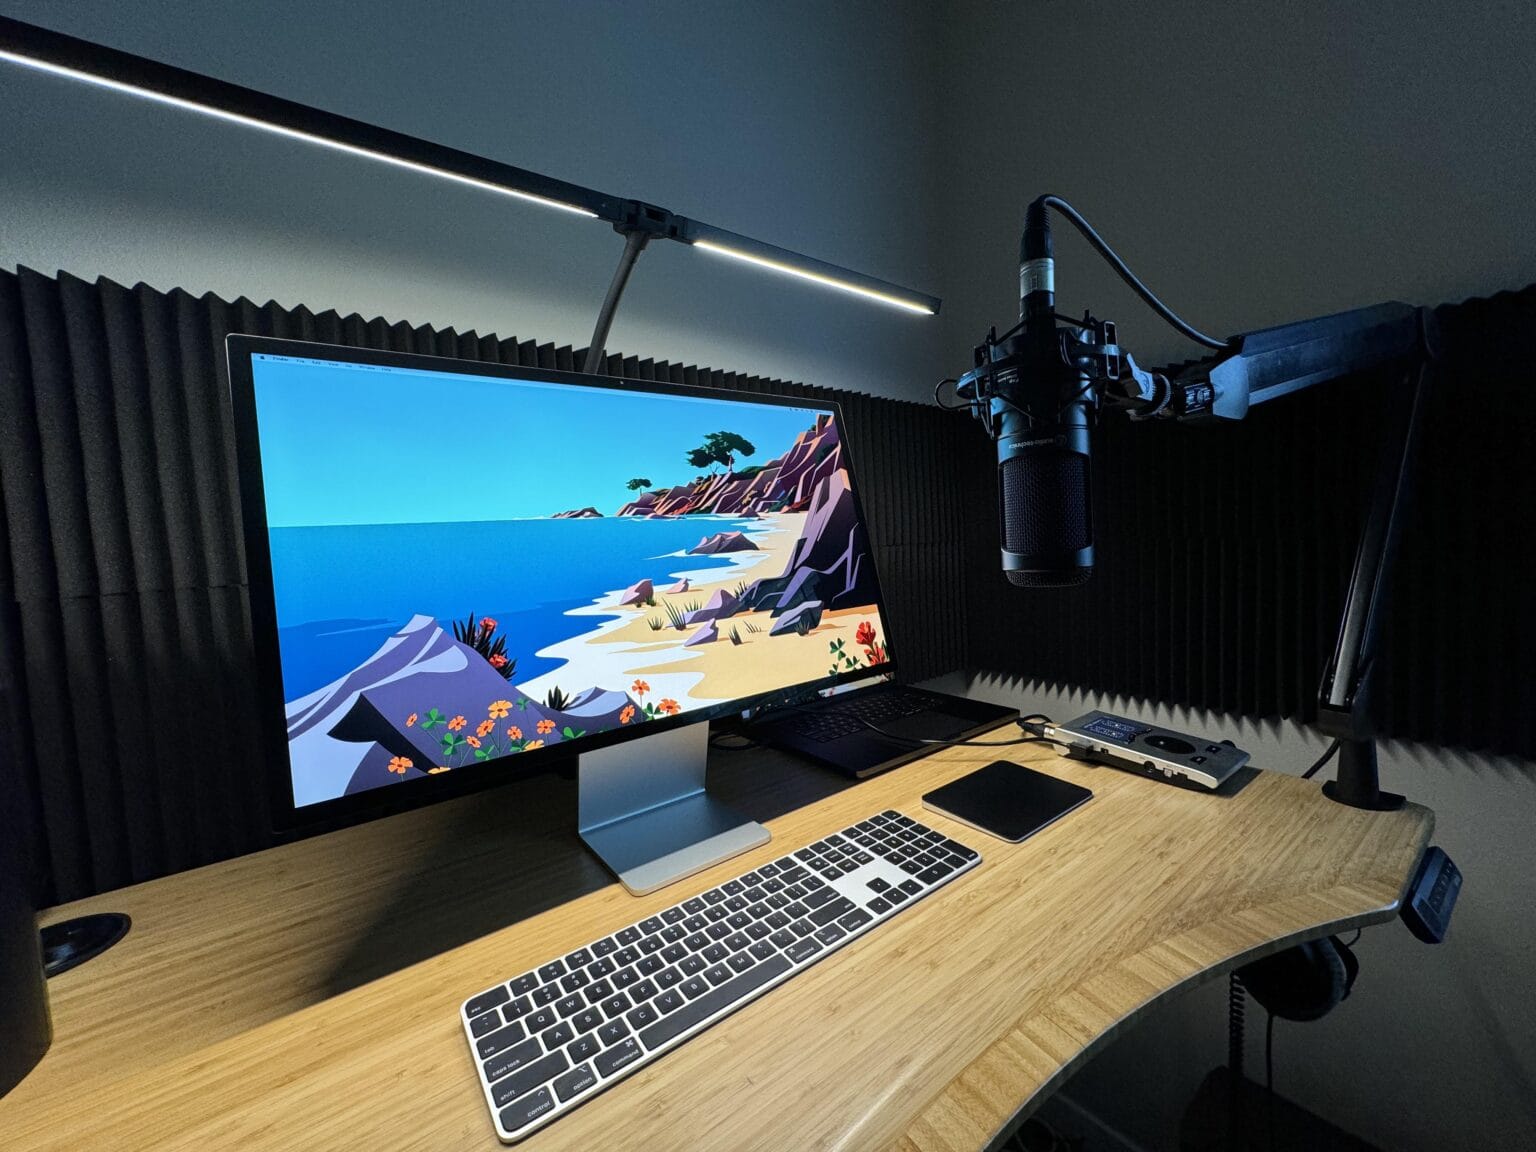 Pzloz LED Desk Lamp in M3 Max MacBook Pro and Studio display setup